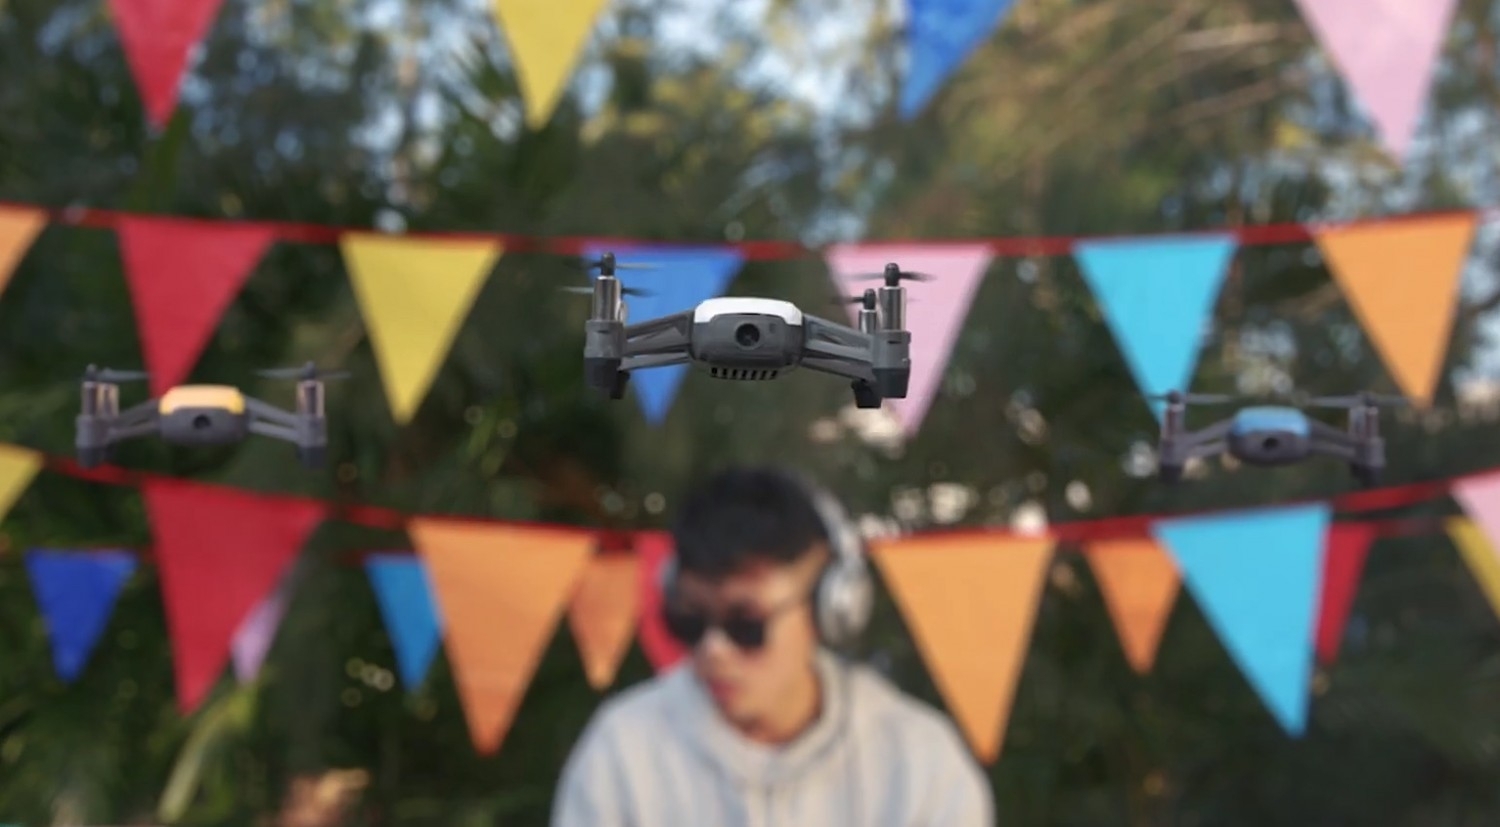 Predstavenie drona Tello